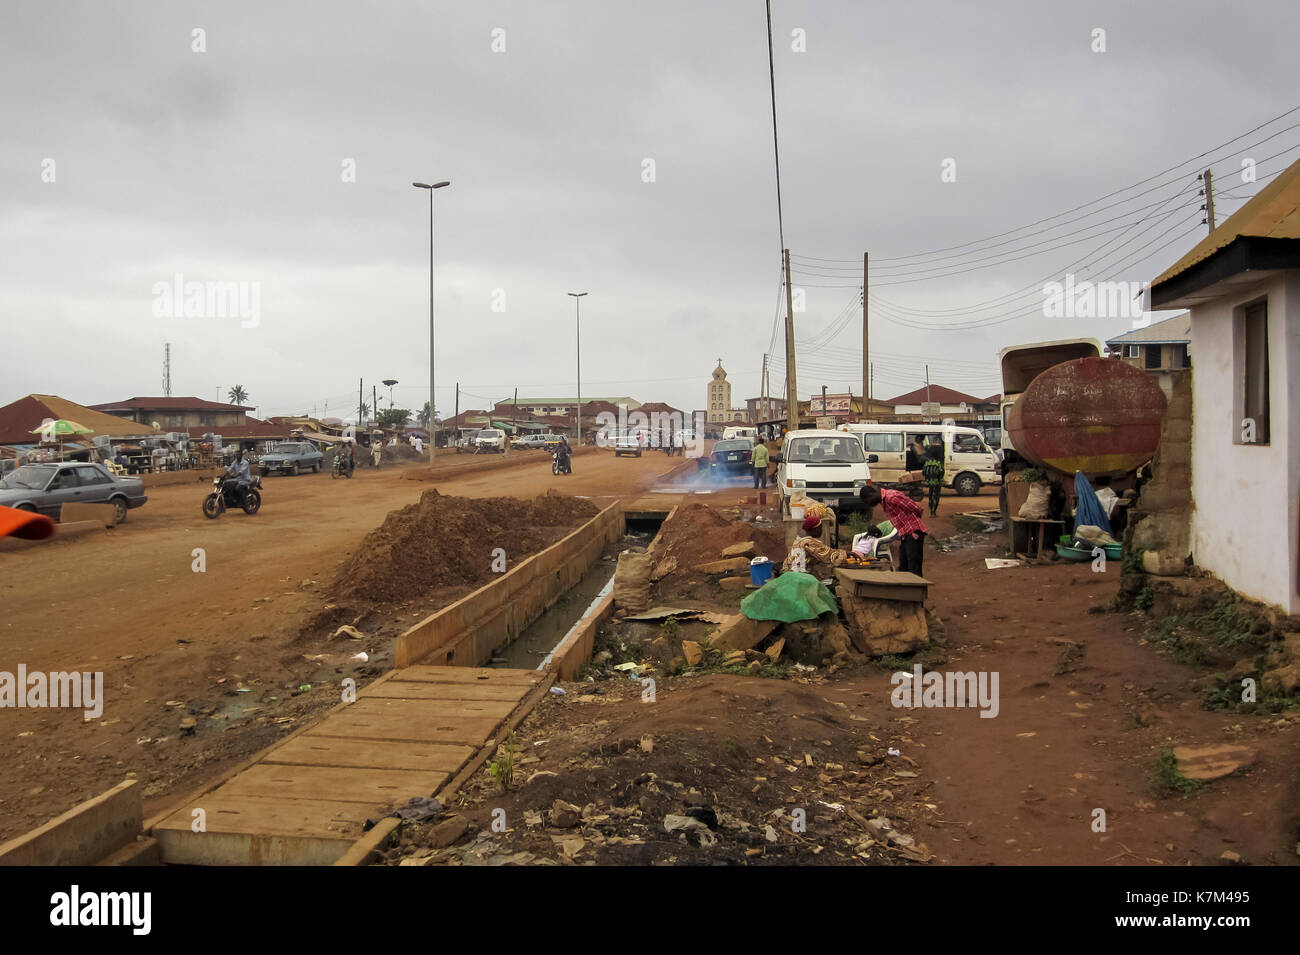 Vue sur la rue avec les gens et les voitures dans la ville de Balma, la plus grande ville de l'Etat d'Ondo, Nigéria Banque D'Images